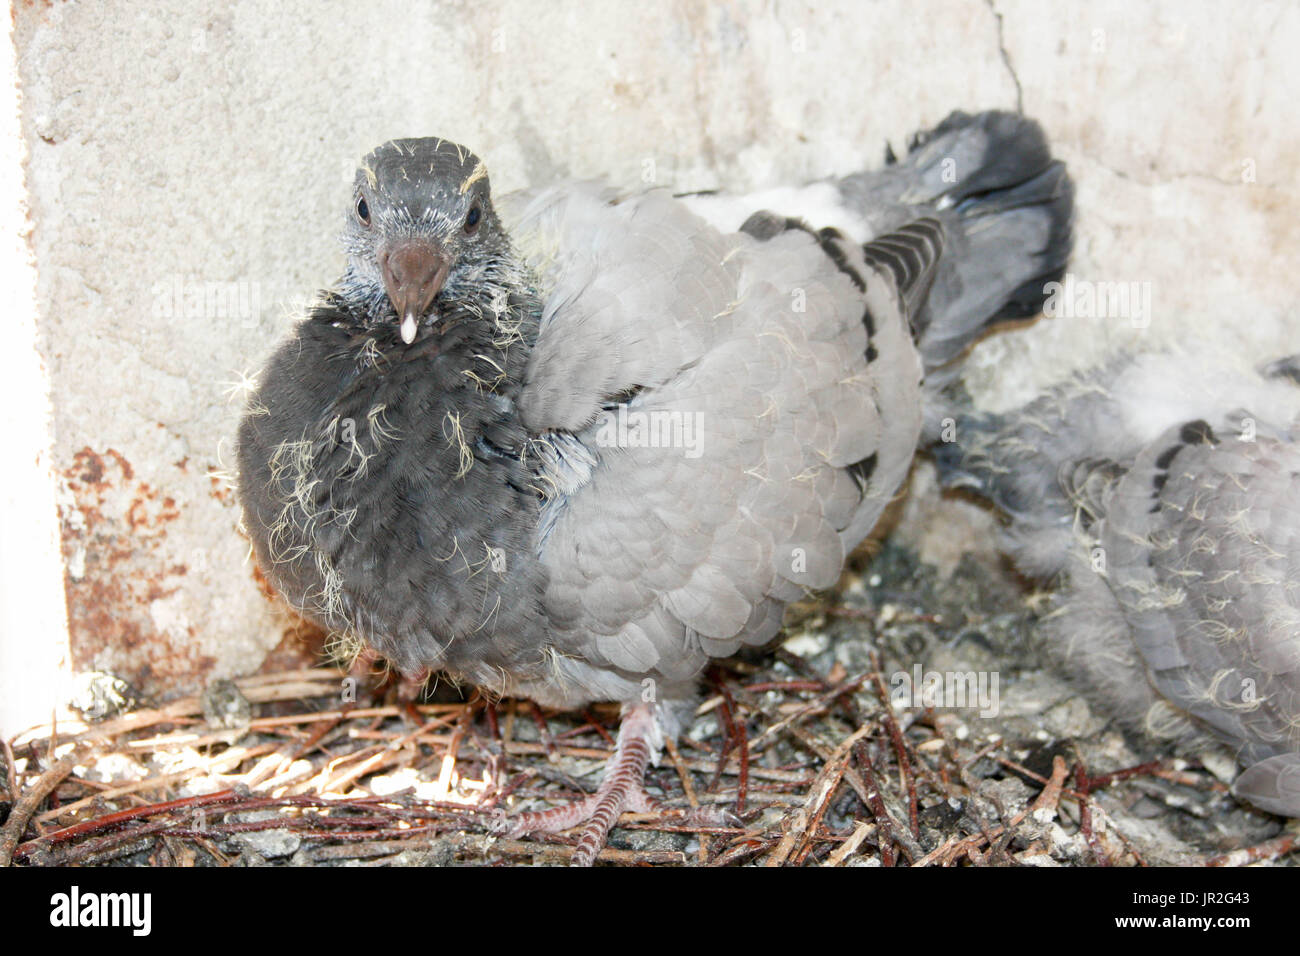 Baby Pigeon Banque D Image Et Photos Alamy